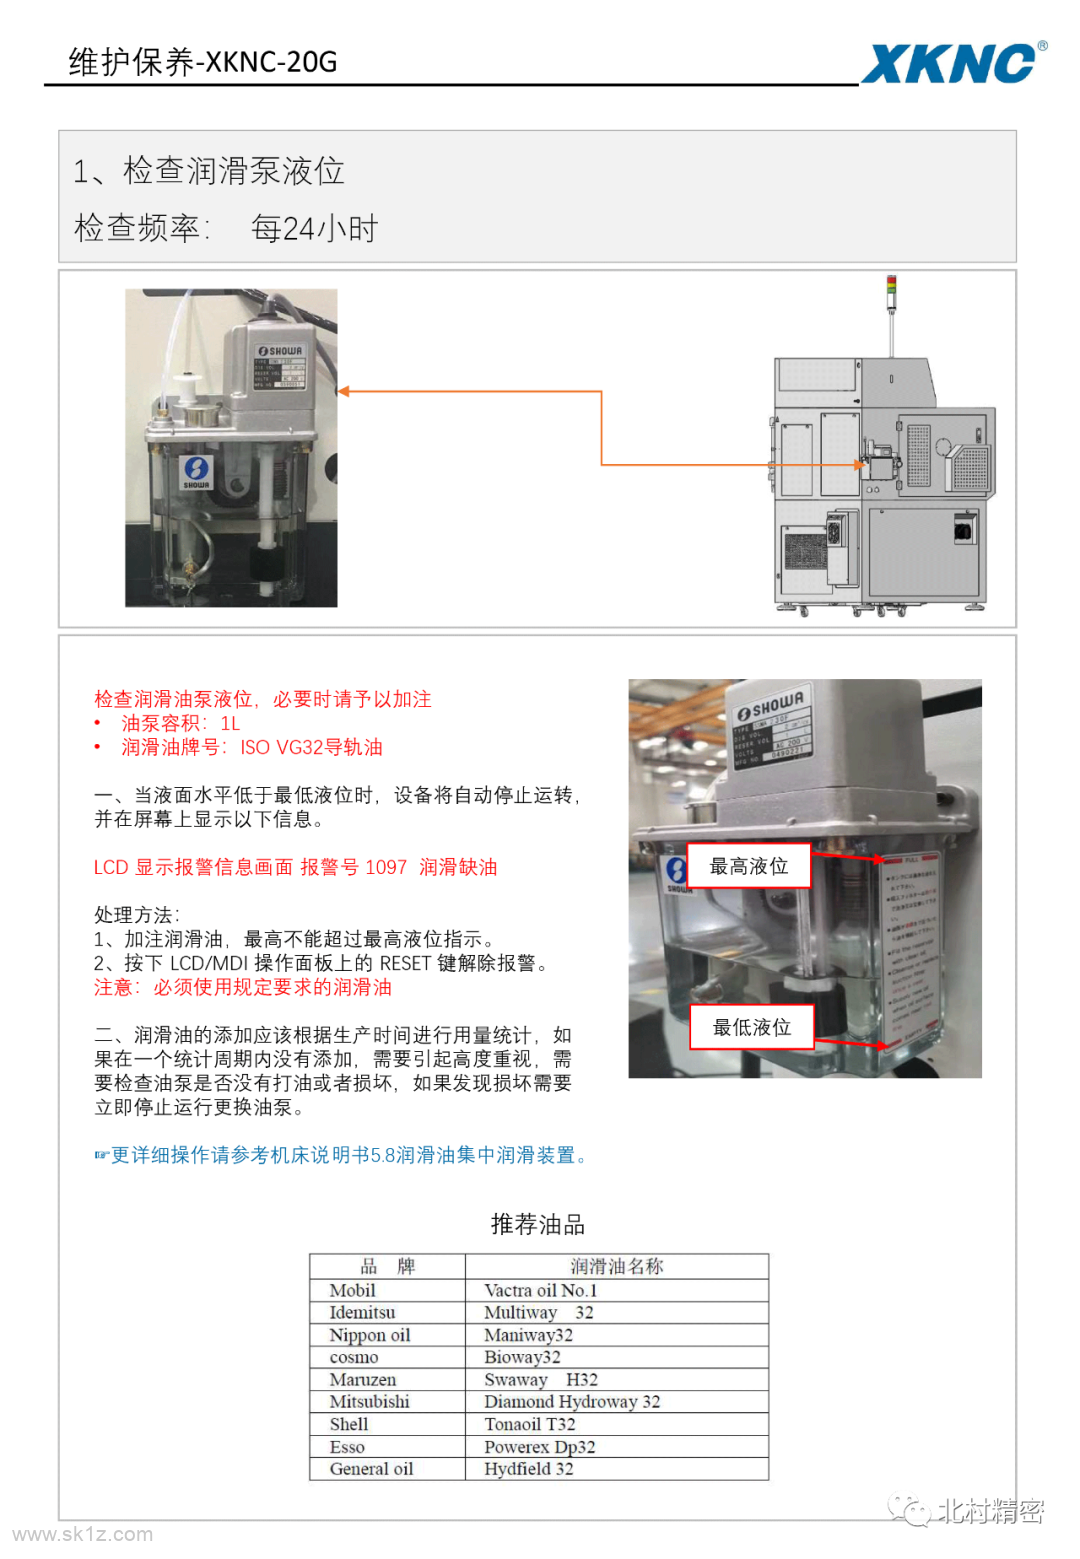 【维修干货】| XKNC-20G机床日常维护保养指导